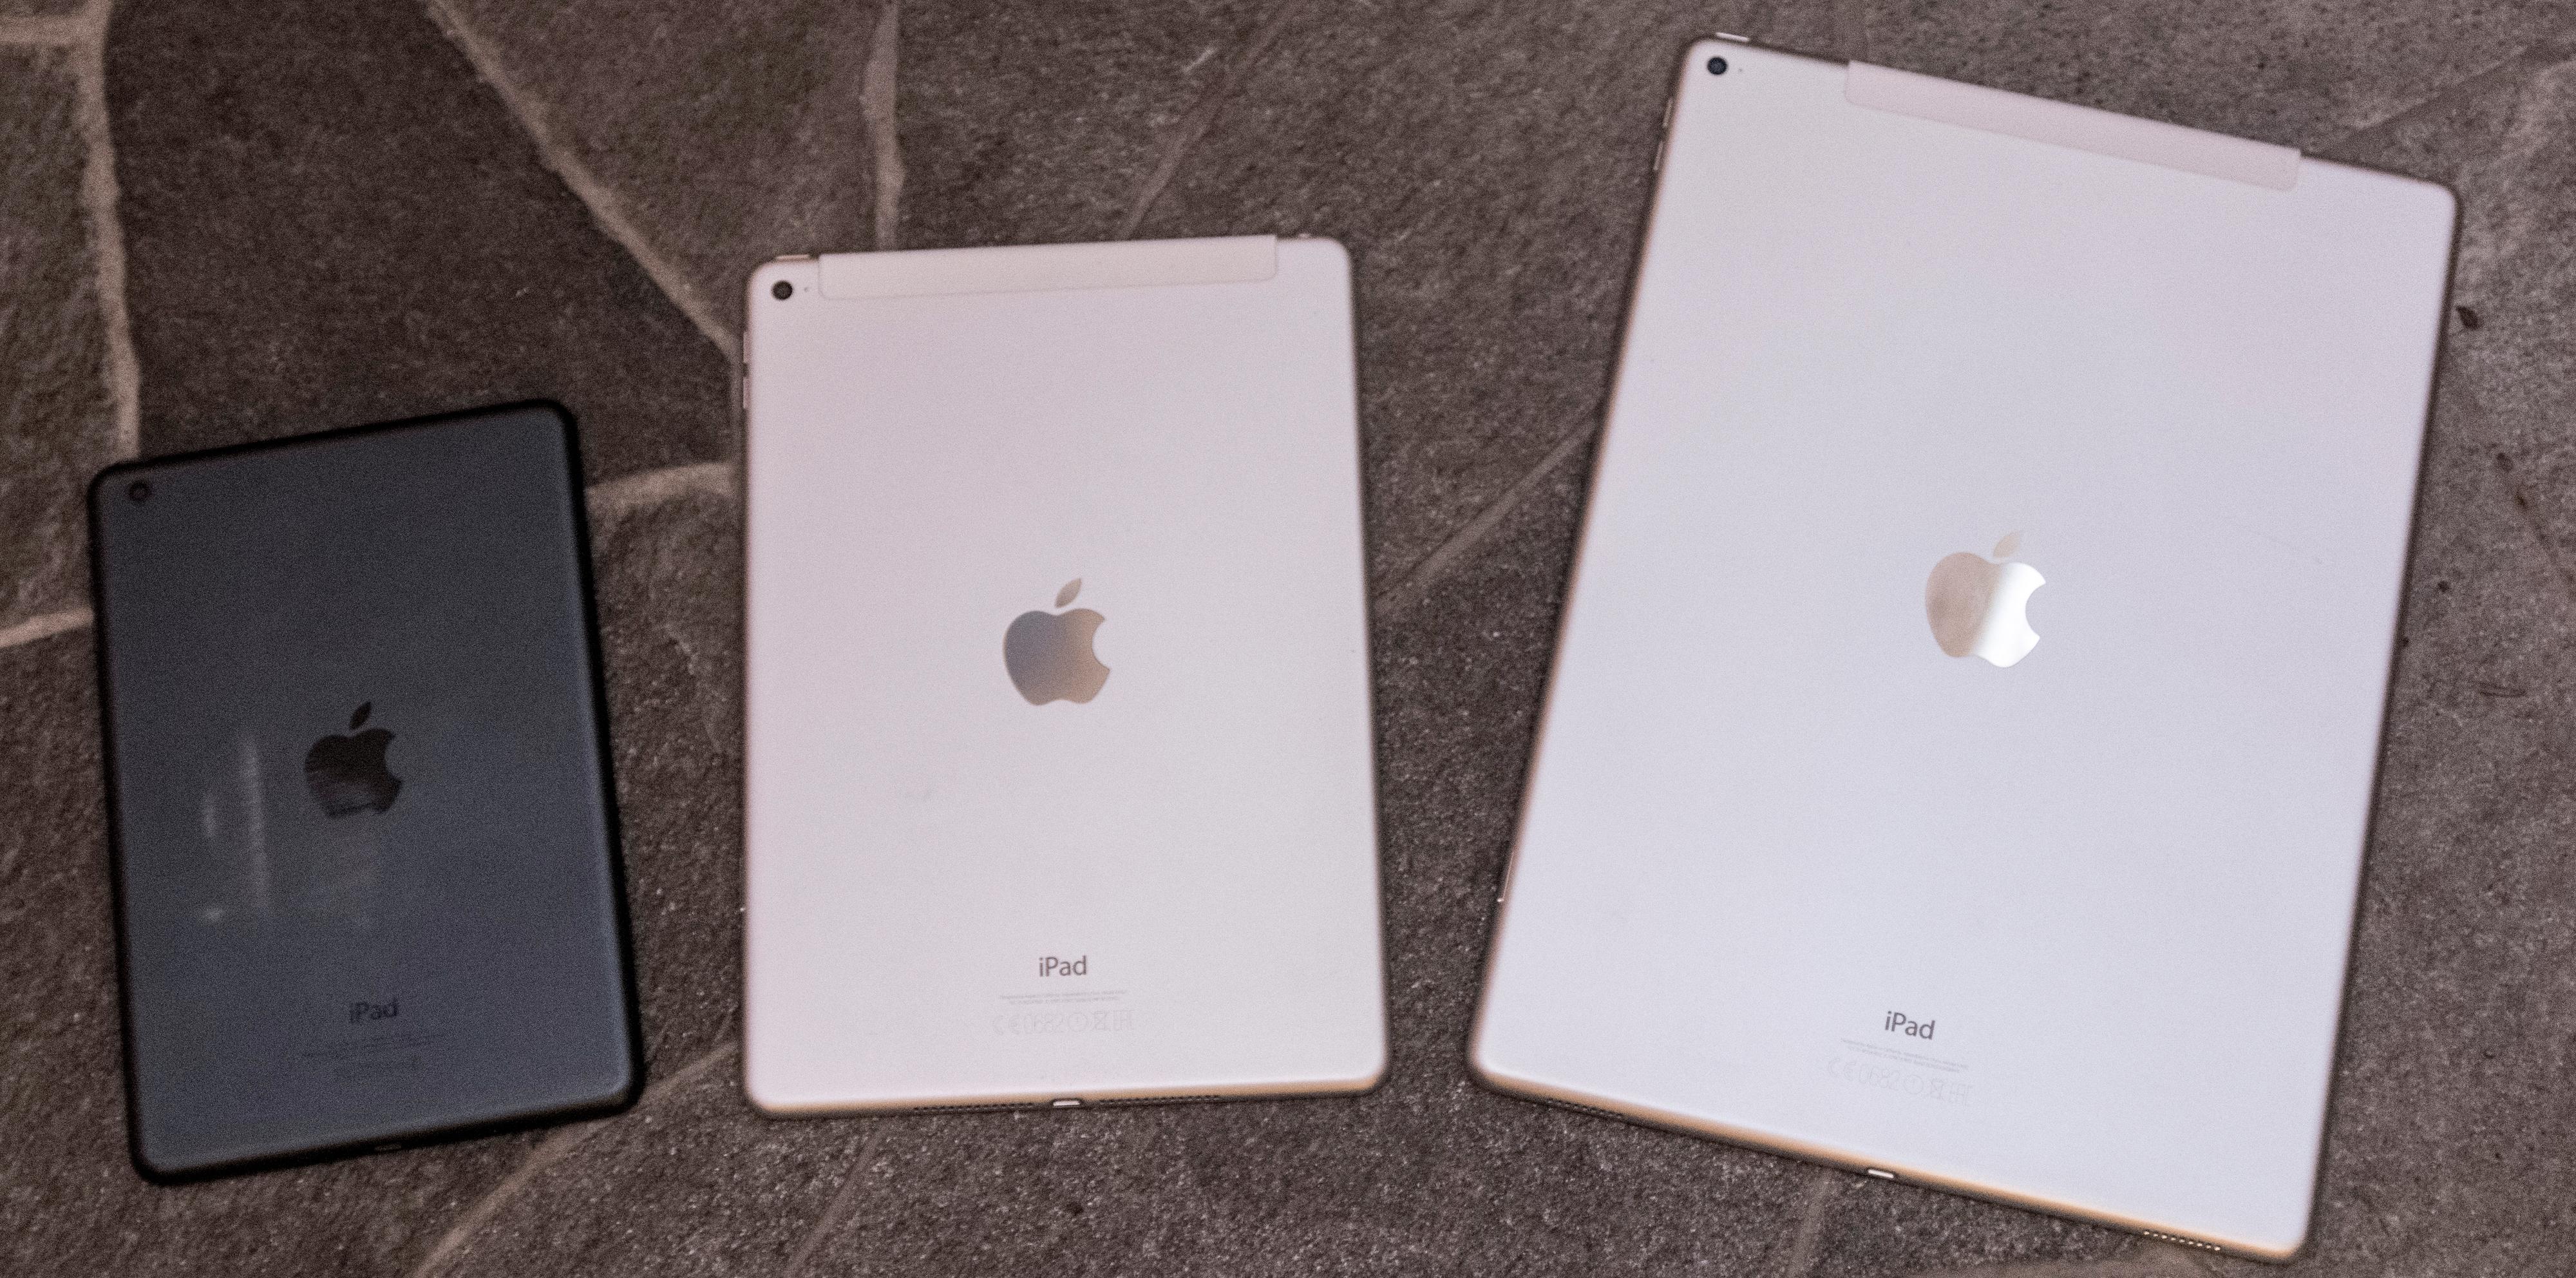 Apple leker med størrelser: Fra venstre, originale iPad Mini, iPad Air 2 og iPad Pro. Mini får stadig mindre betydningsfulle oppdateringer om dagen. Foto: Finn Jarle Kvalheim, Tek.no